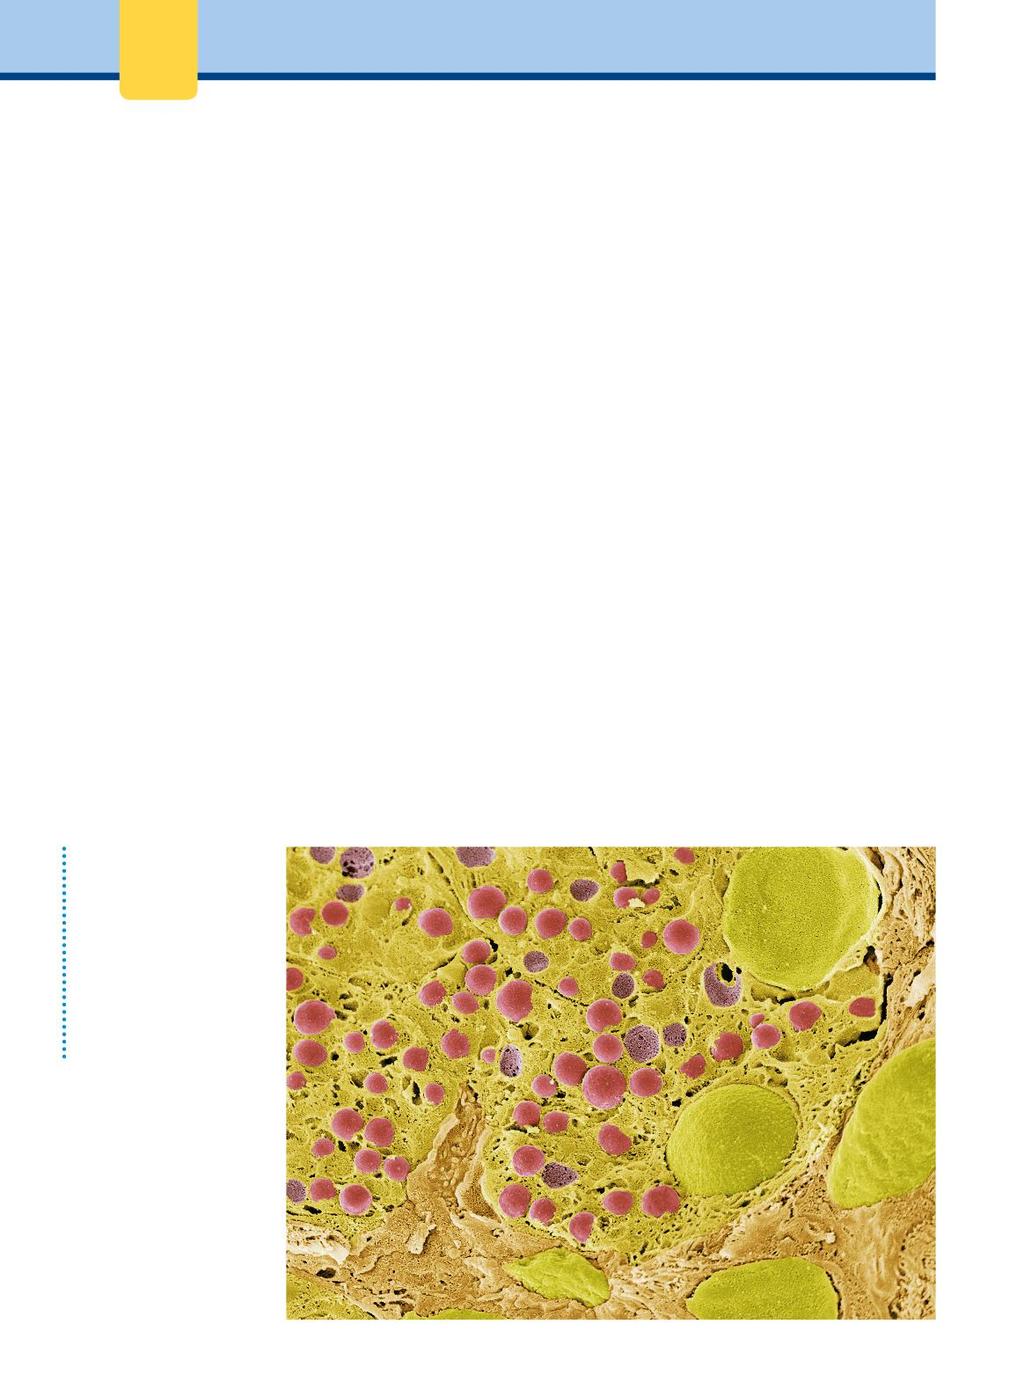 2 Biochimicamente Figura.2 Fotografia al microscopio elettronico a scansione (SEM) di cellule pancreatiche, colorate in verde per mostrare i nuclei e in rosso i granuli di zimogeno.